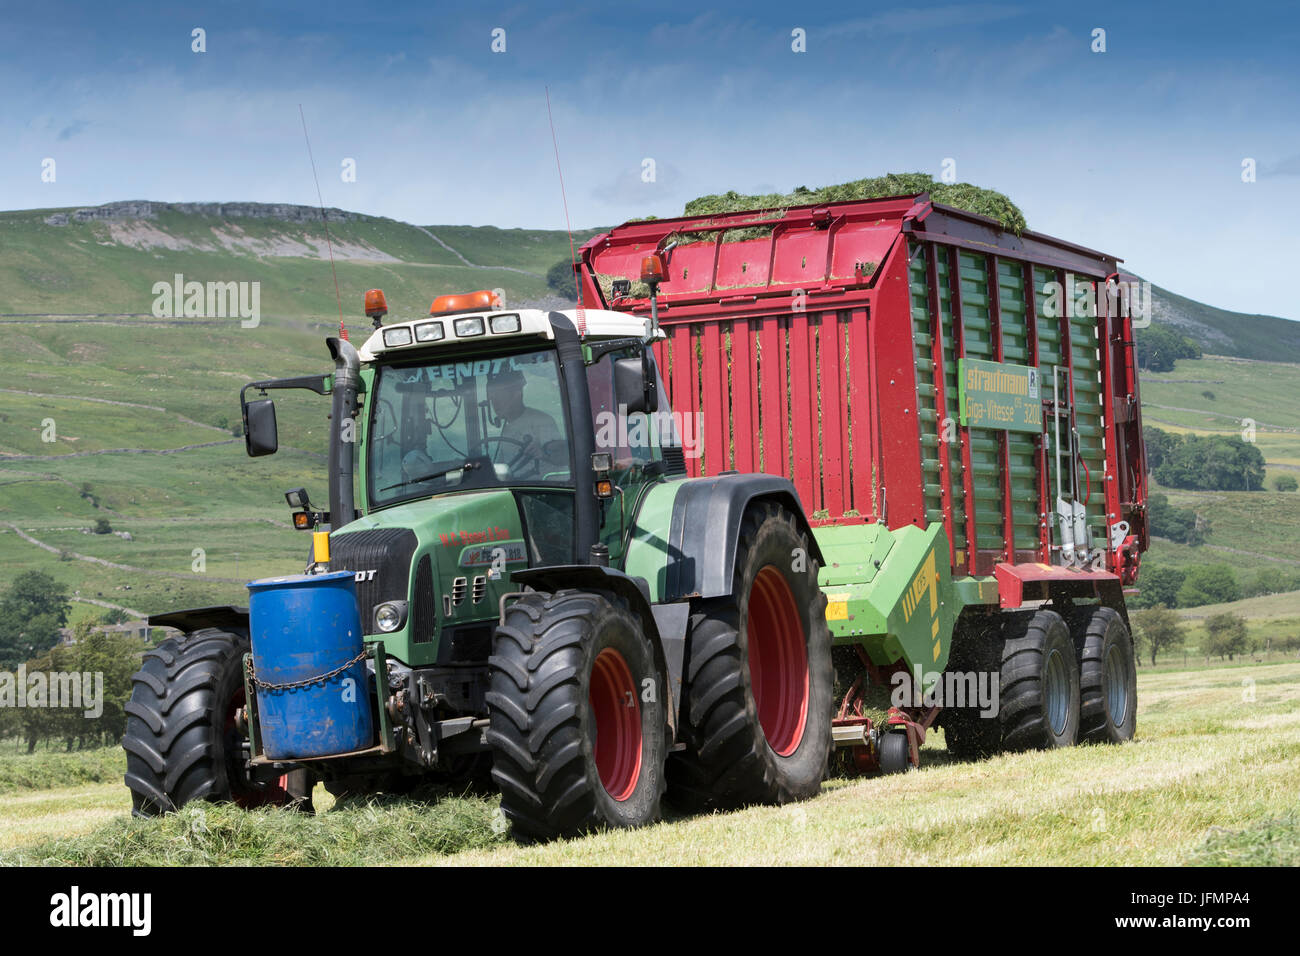 Facendo da insilato raccolto in Yorkshire Dales con un foraggio Strautmann carro trainato da un trattore Fendt. Regno Unito. Foto Stock